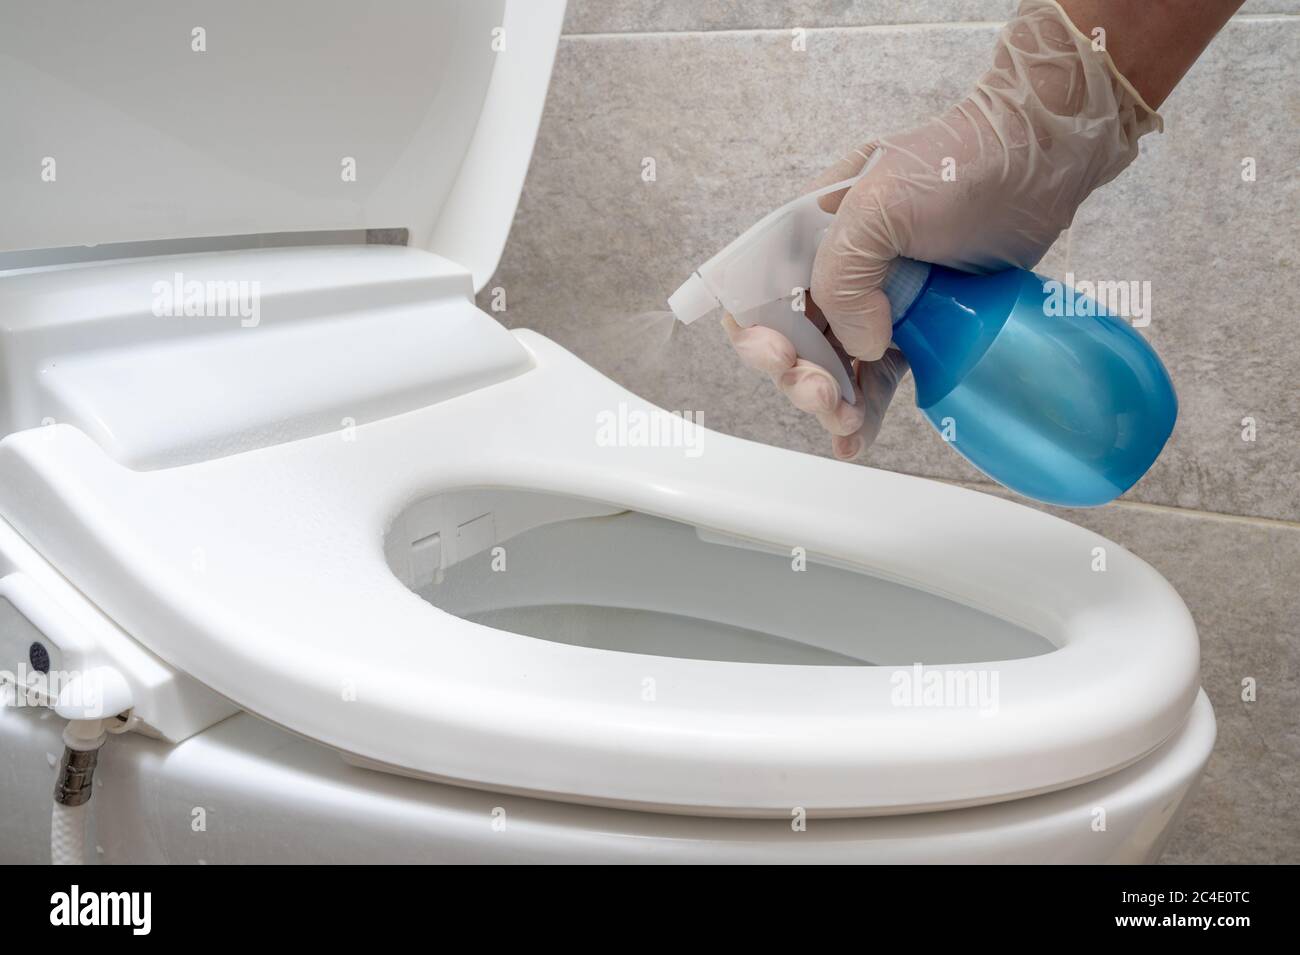 Disinfezione della toilette. Pulizia e disinfezione del recipiente del water. Prevenzione dell'infezione da coronavirus. Foto Stock